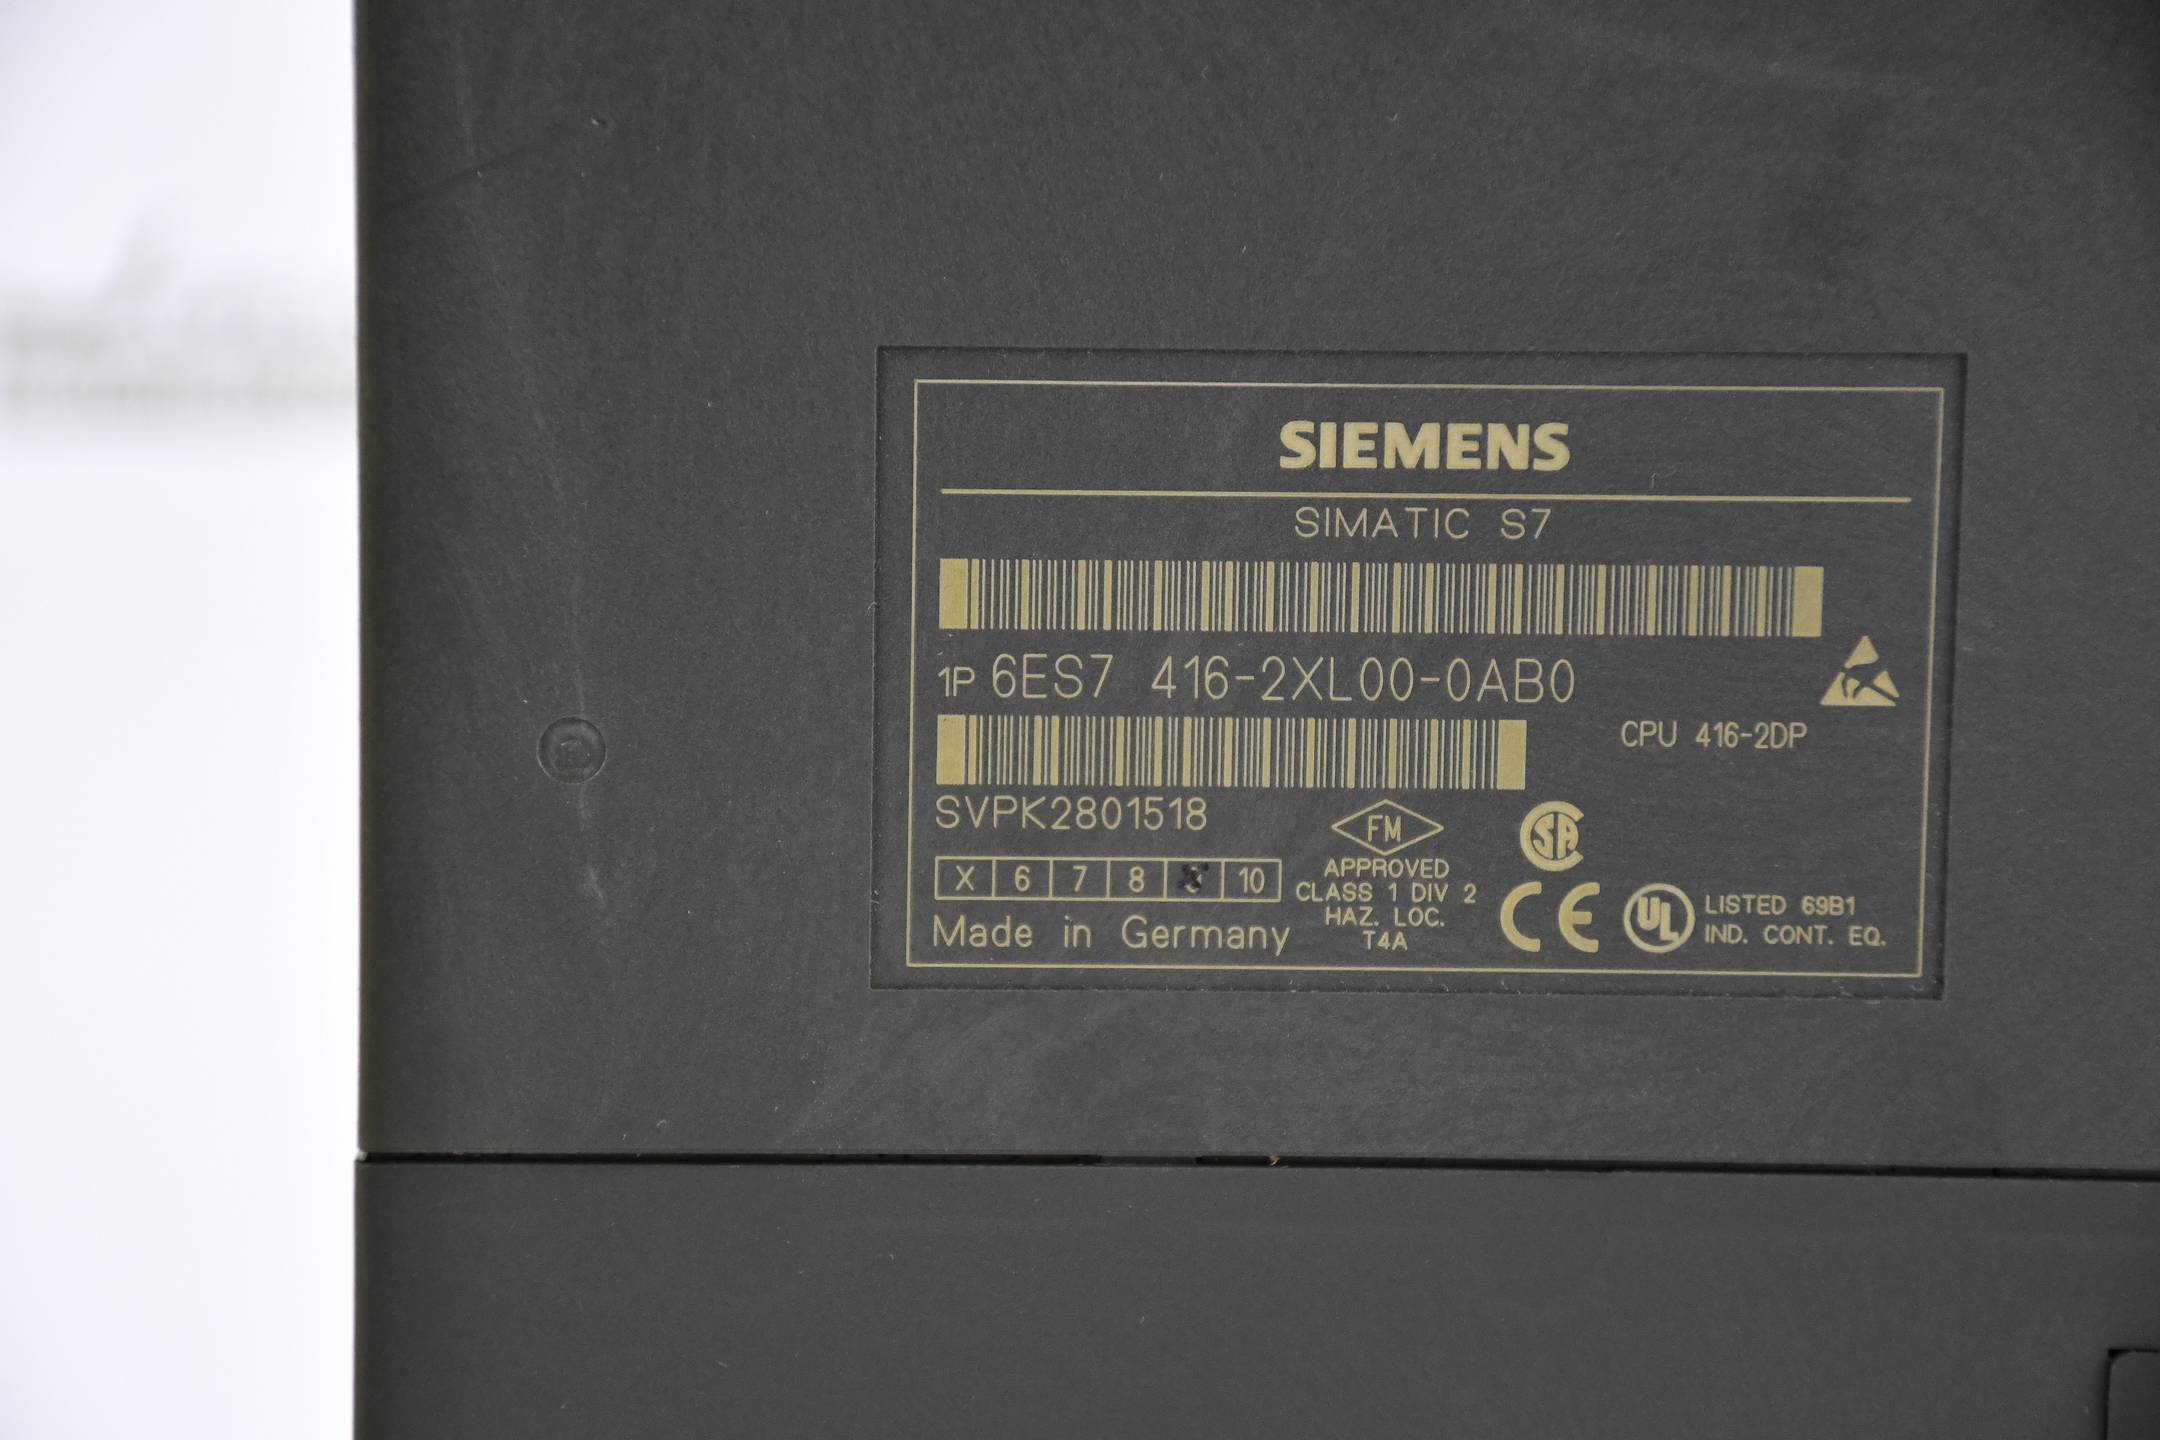 Siemens simatic S7-400 CPU 416-2DP 6ES7 416-2XL00-0AB0 ( 6ES7416-2XL00-0AB0 ) E9